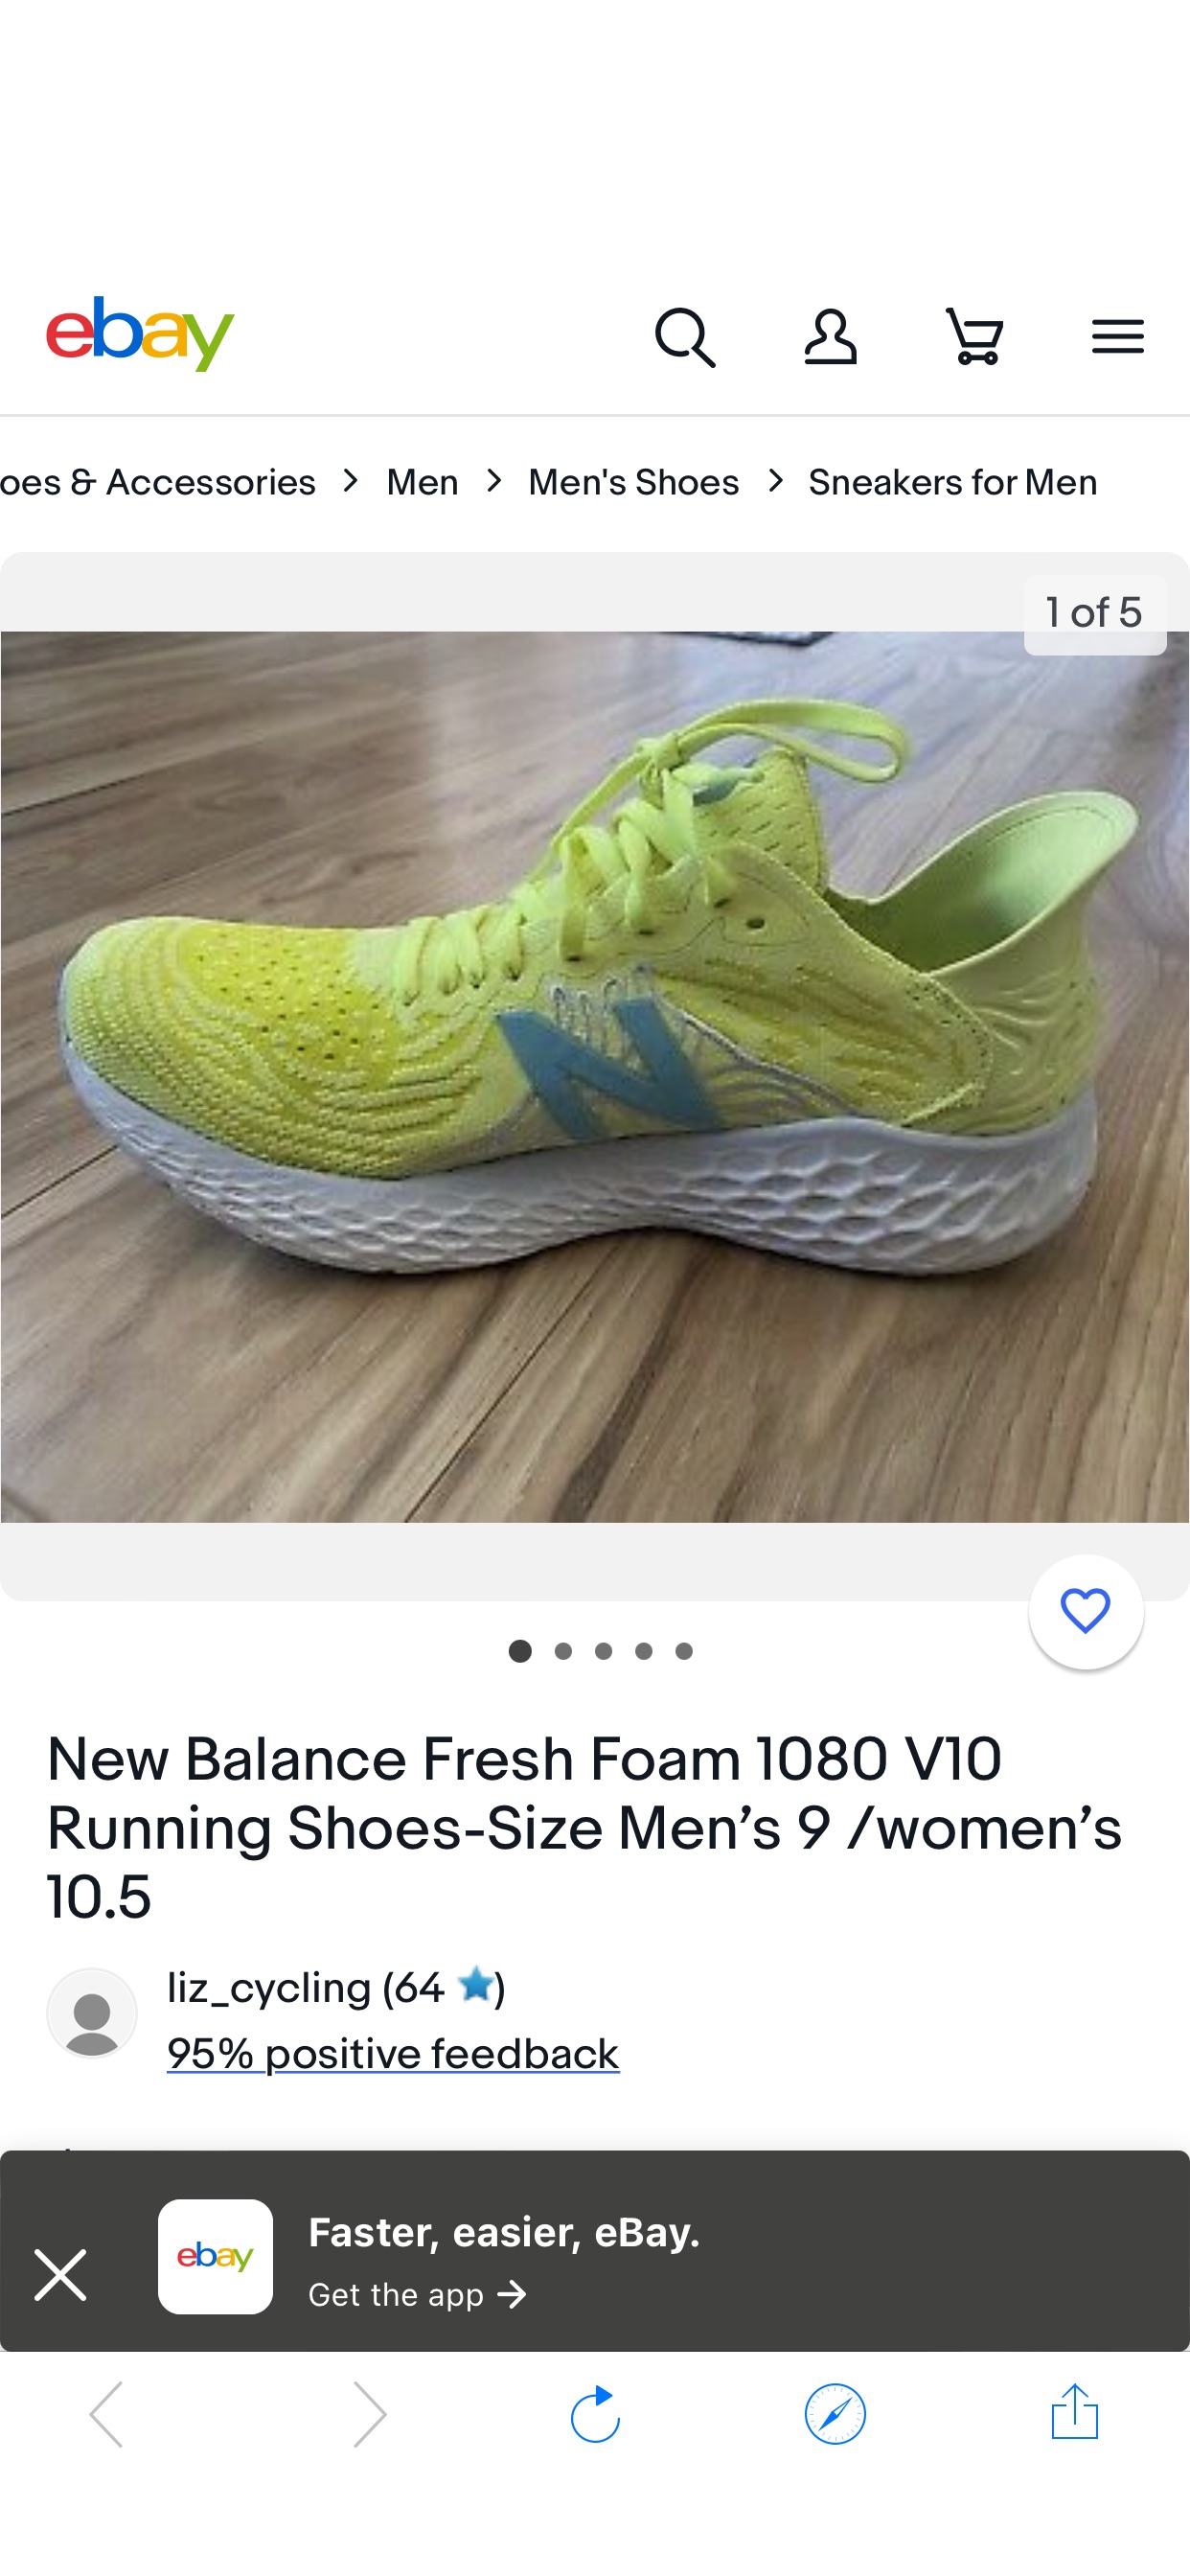 New Balance Fresh Foam 1080 V10 Running Shoes-Size Men’s 9 /women’s 10.5 | eBay